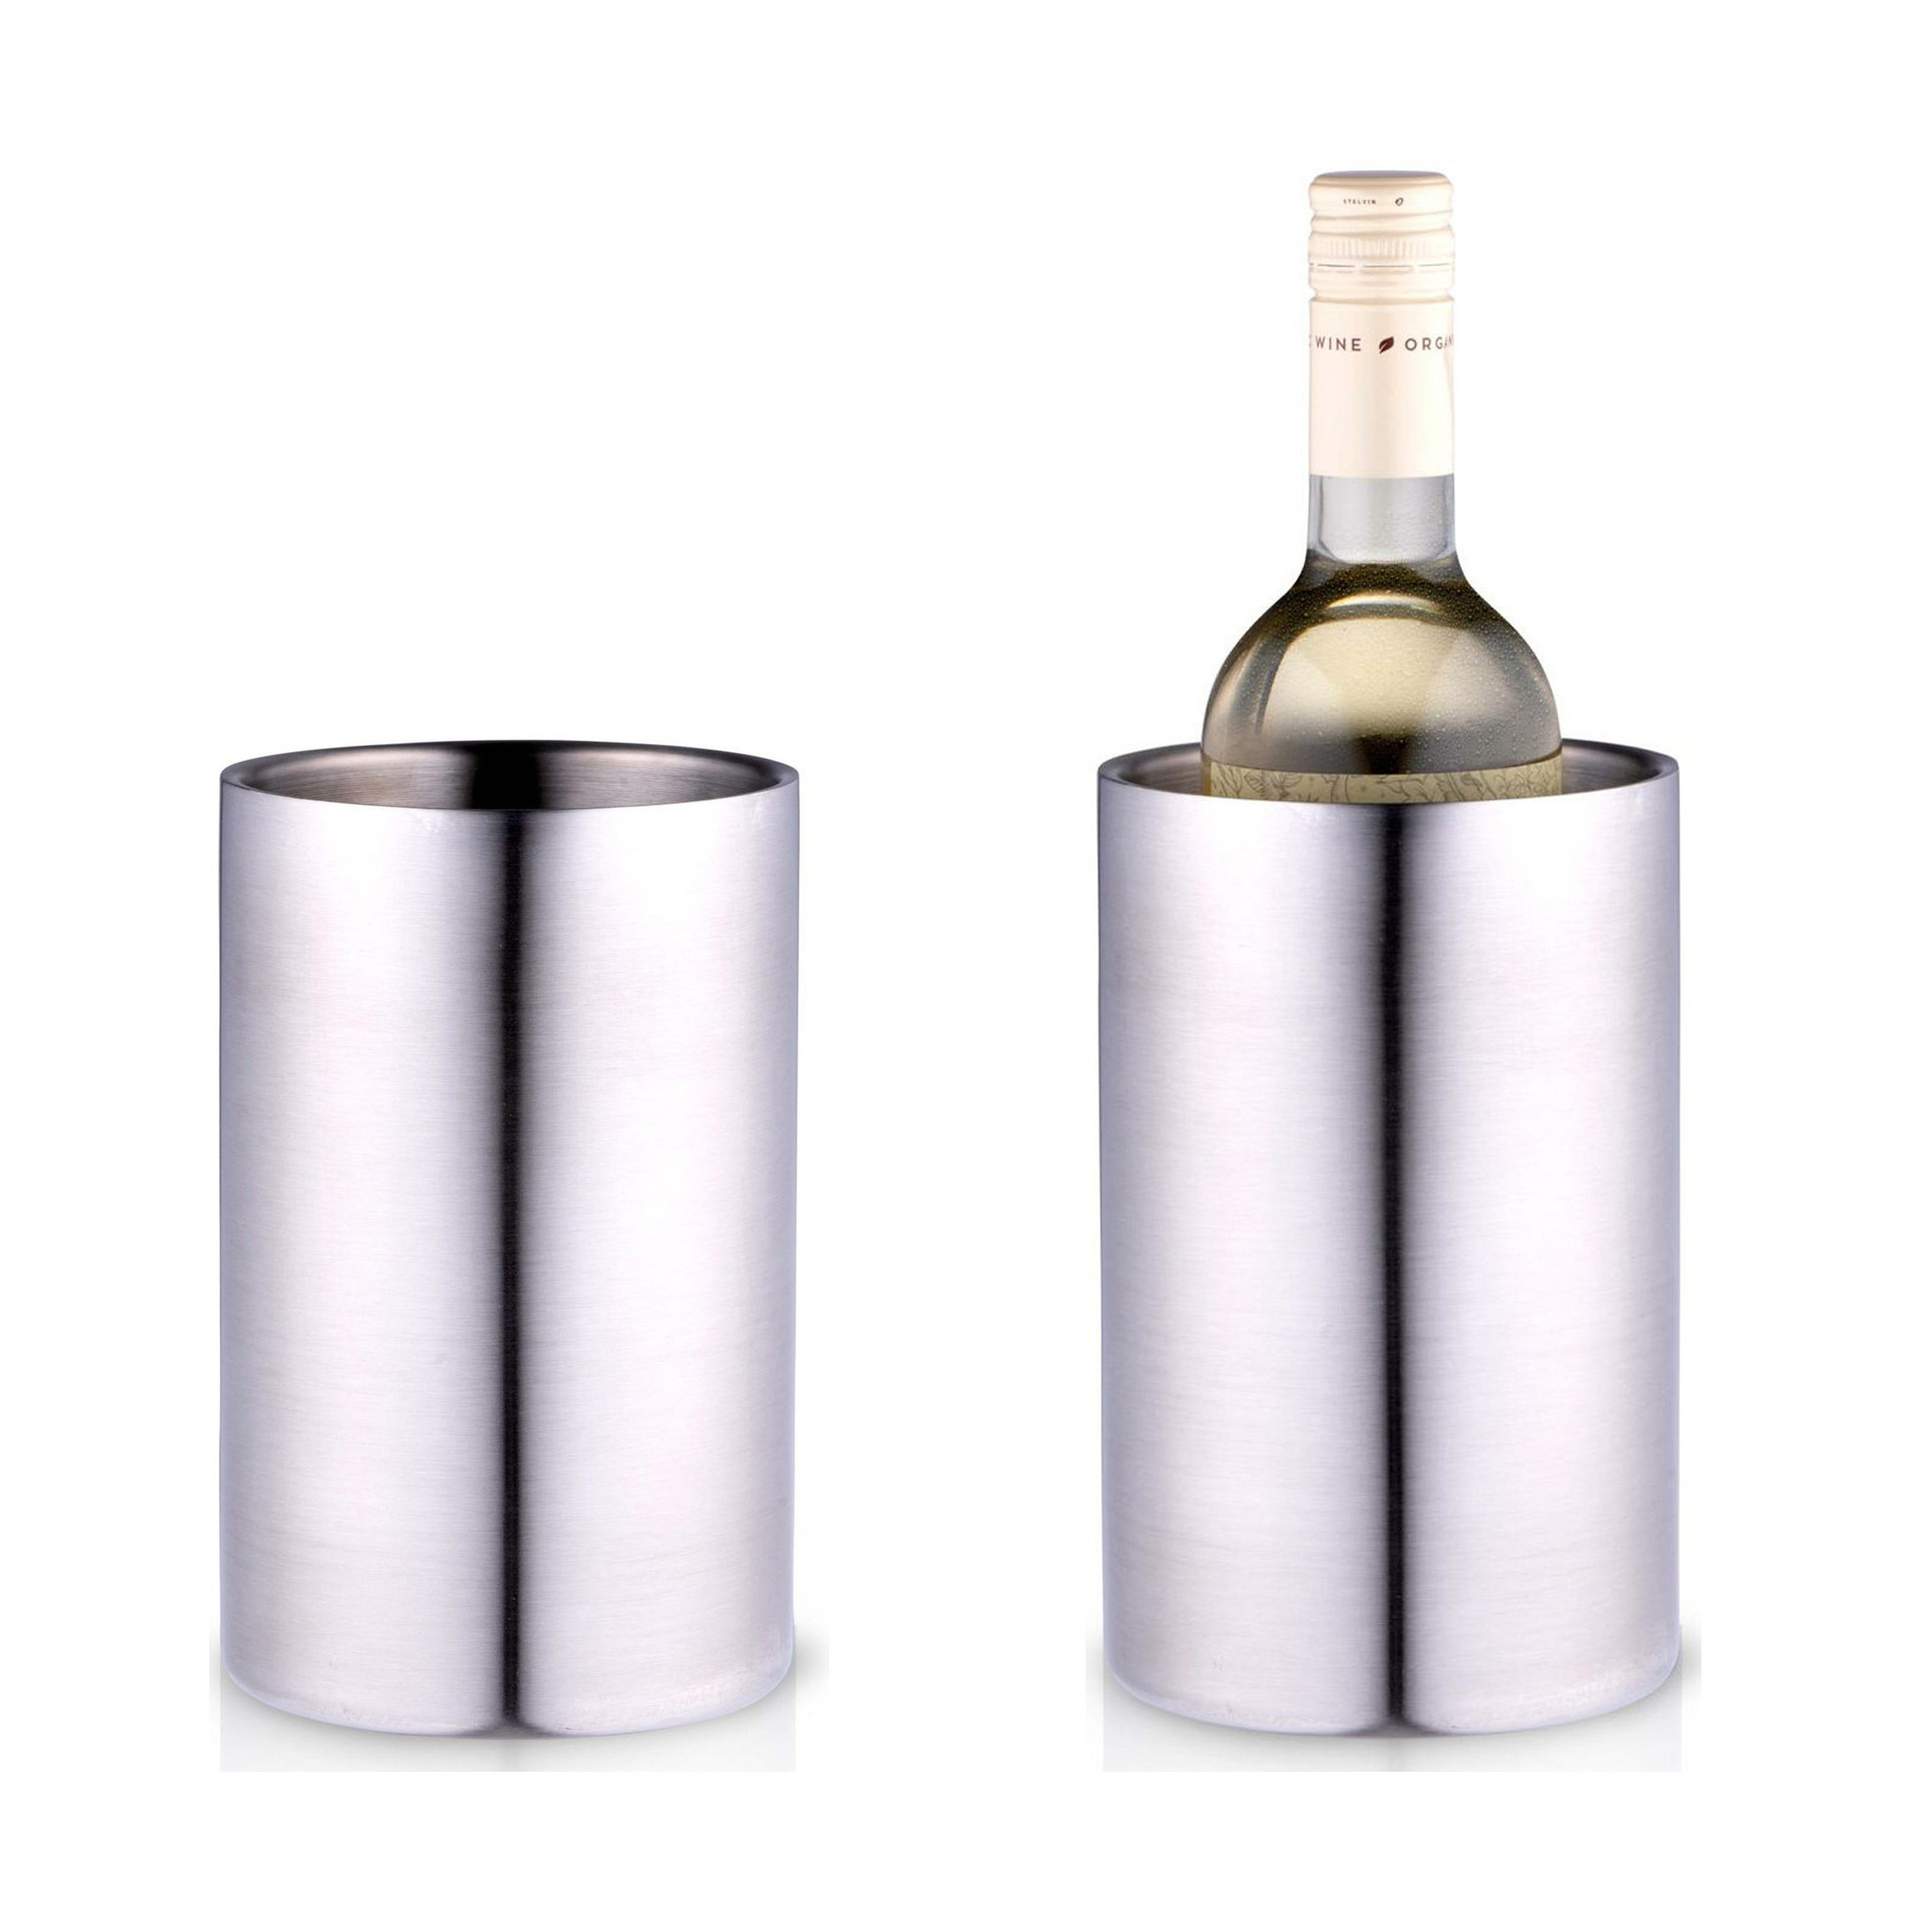 Champagne & wijnfles koeler-ijsemmer 2x zilver rvs H19 x D12 cm Luxe stijlvolle uitvoering